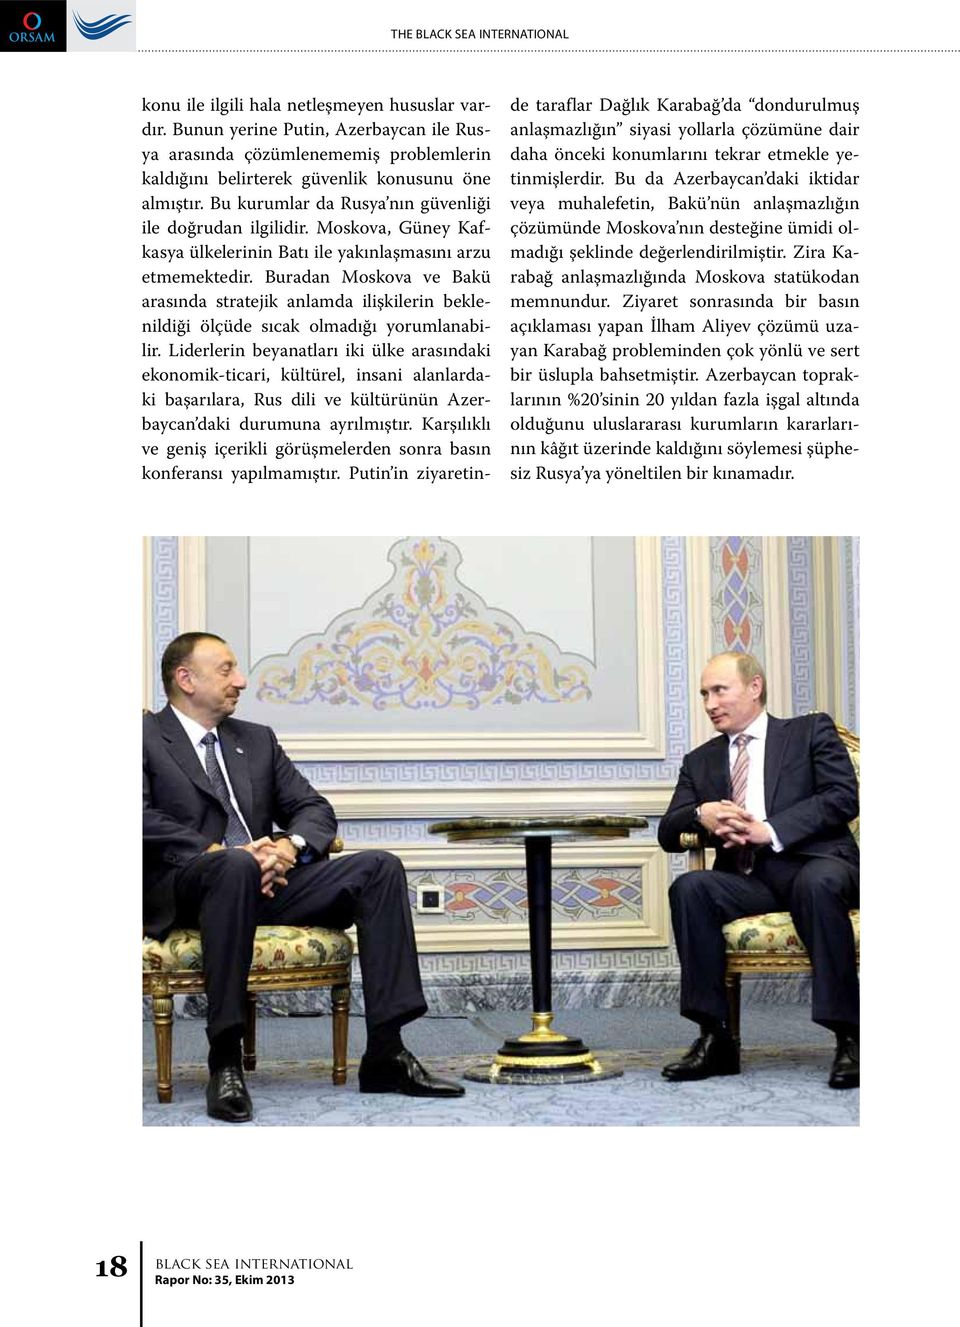 Buradan Moskova ve Bakü arasında stratejik anlamda ilişkilerin beklenildiği ölçüde sıcak olmadığı yorumlanabilir.